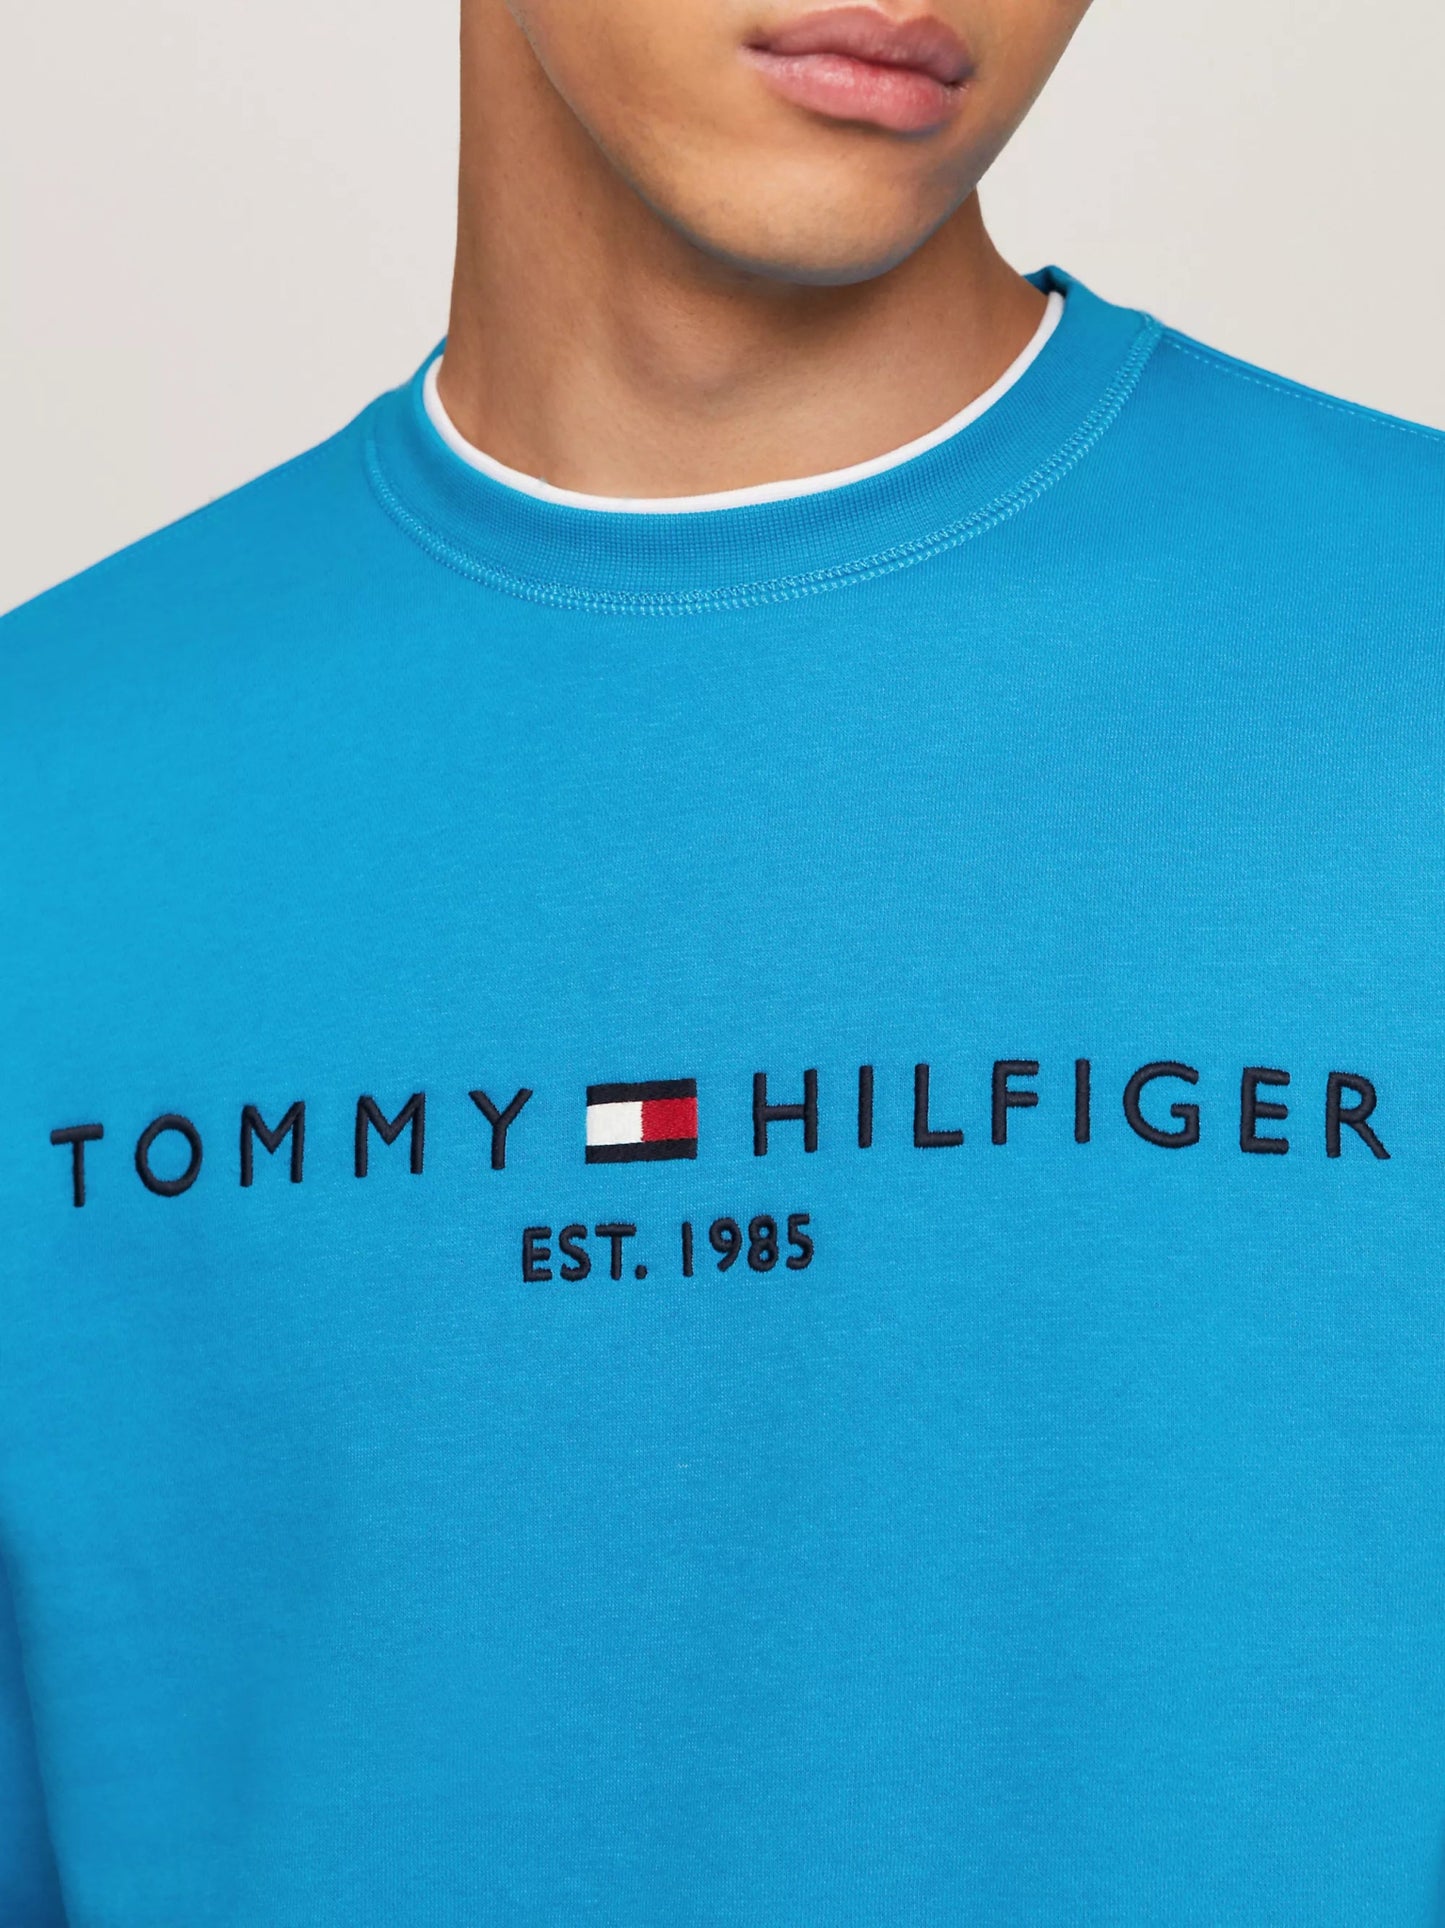 Tommy Hilfiger Tommy Logo Sweatshirt - Matt O'Brien Fashions